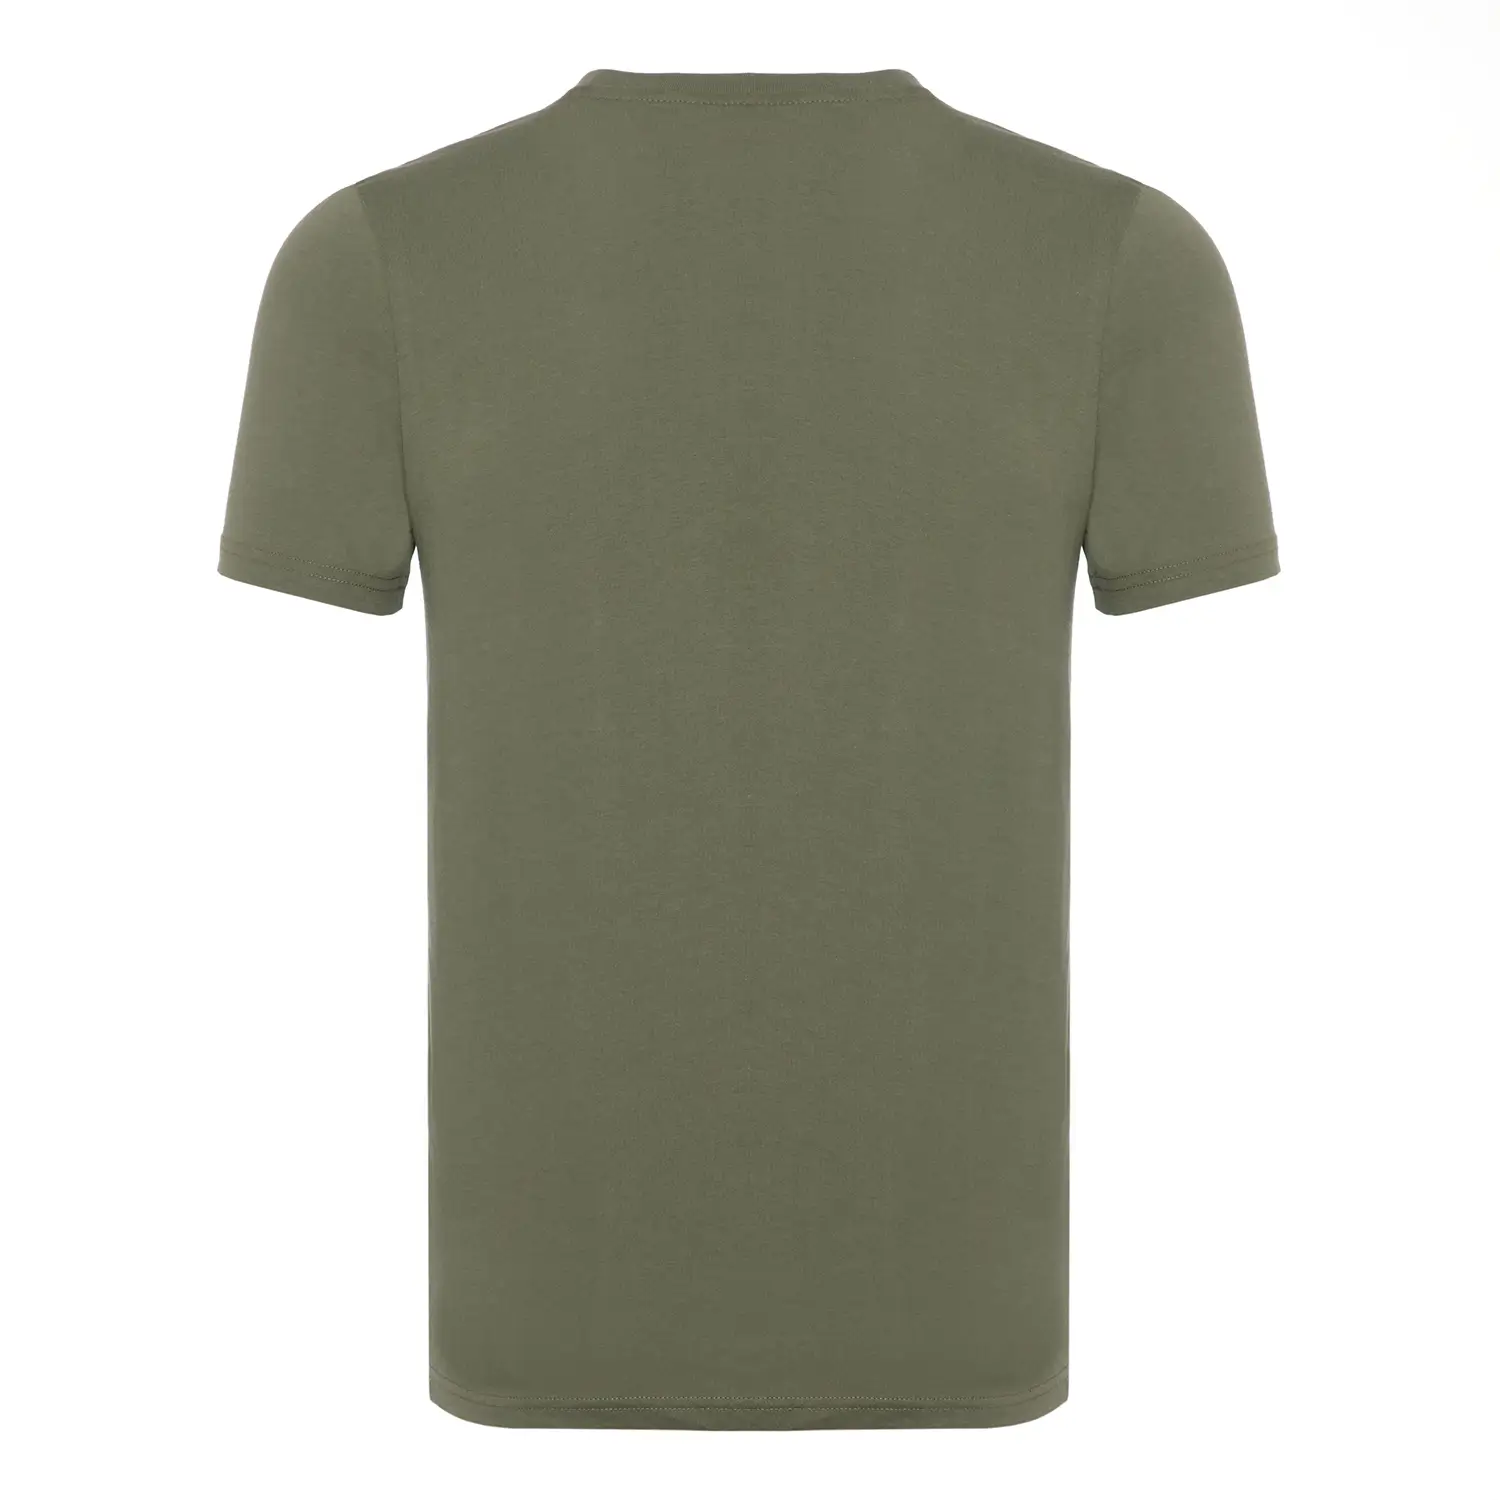 Diadora Ss T-shirt Iconic Asker Yeşili Erkek Tişört - 502.176633-70225